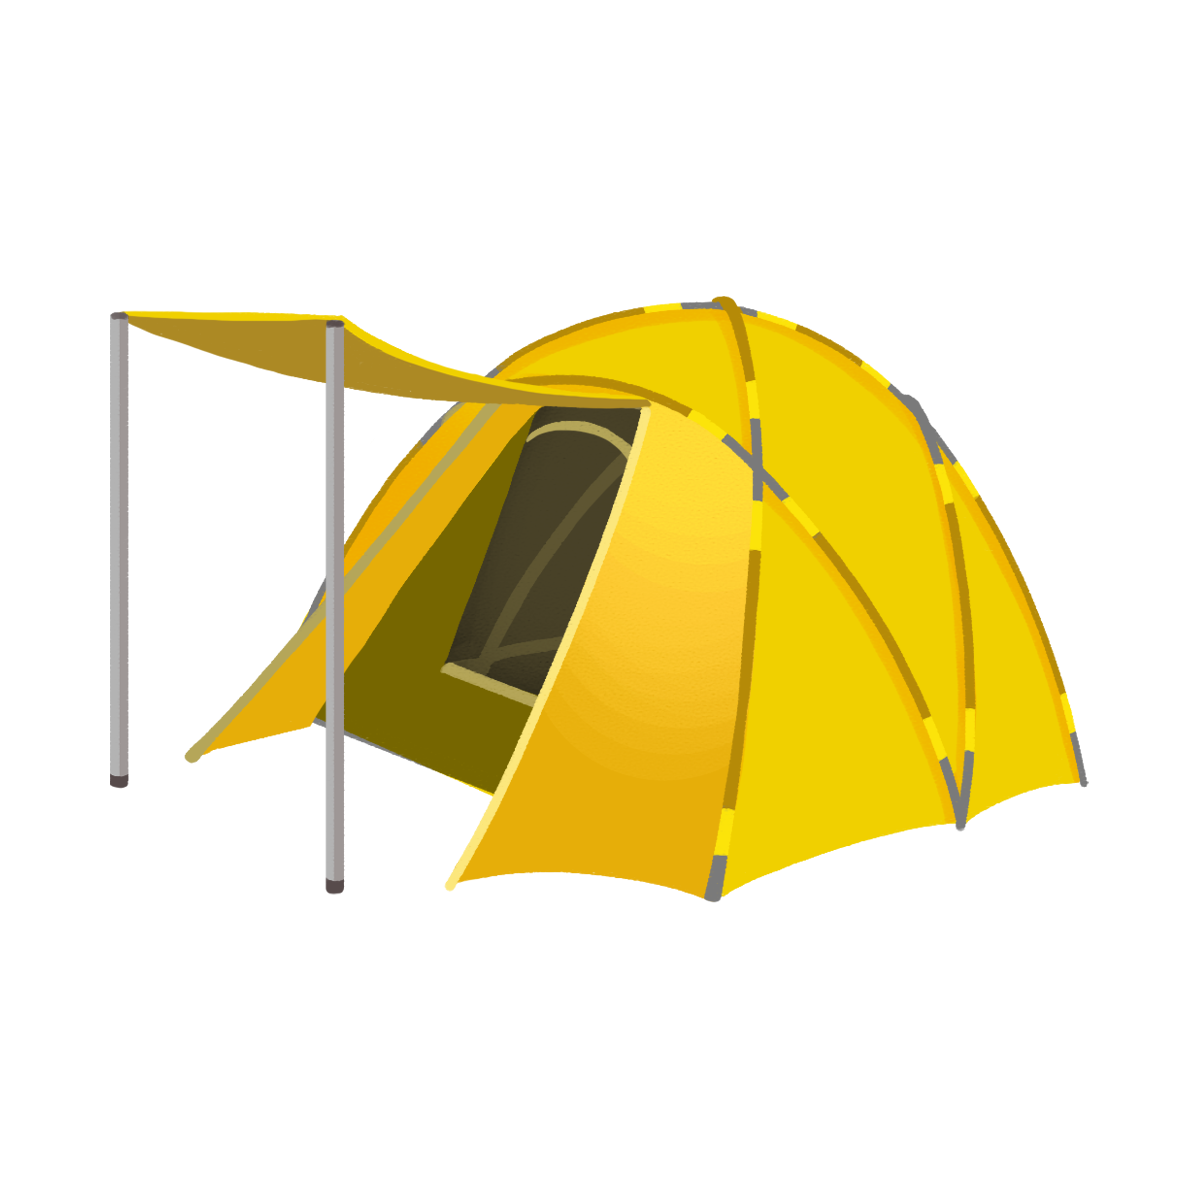 黄色いテントのイラスト エコのモト